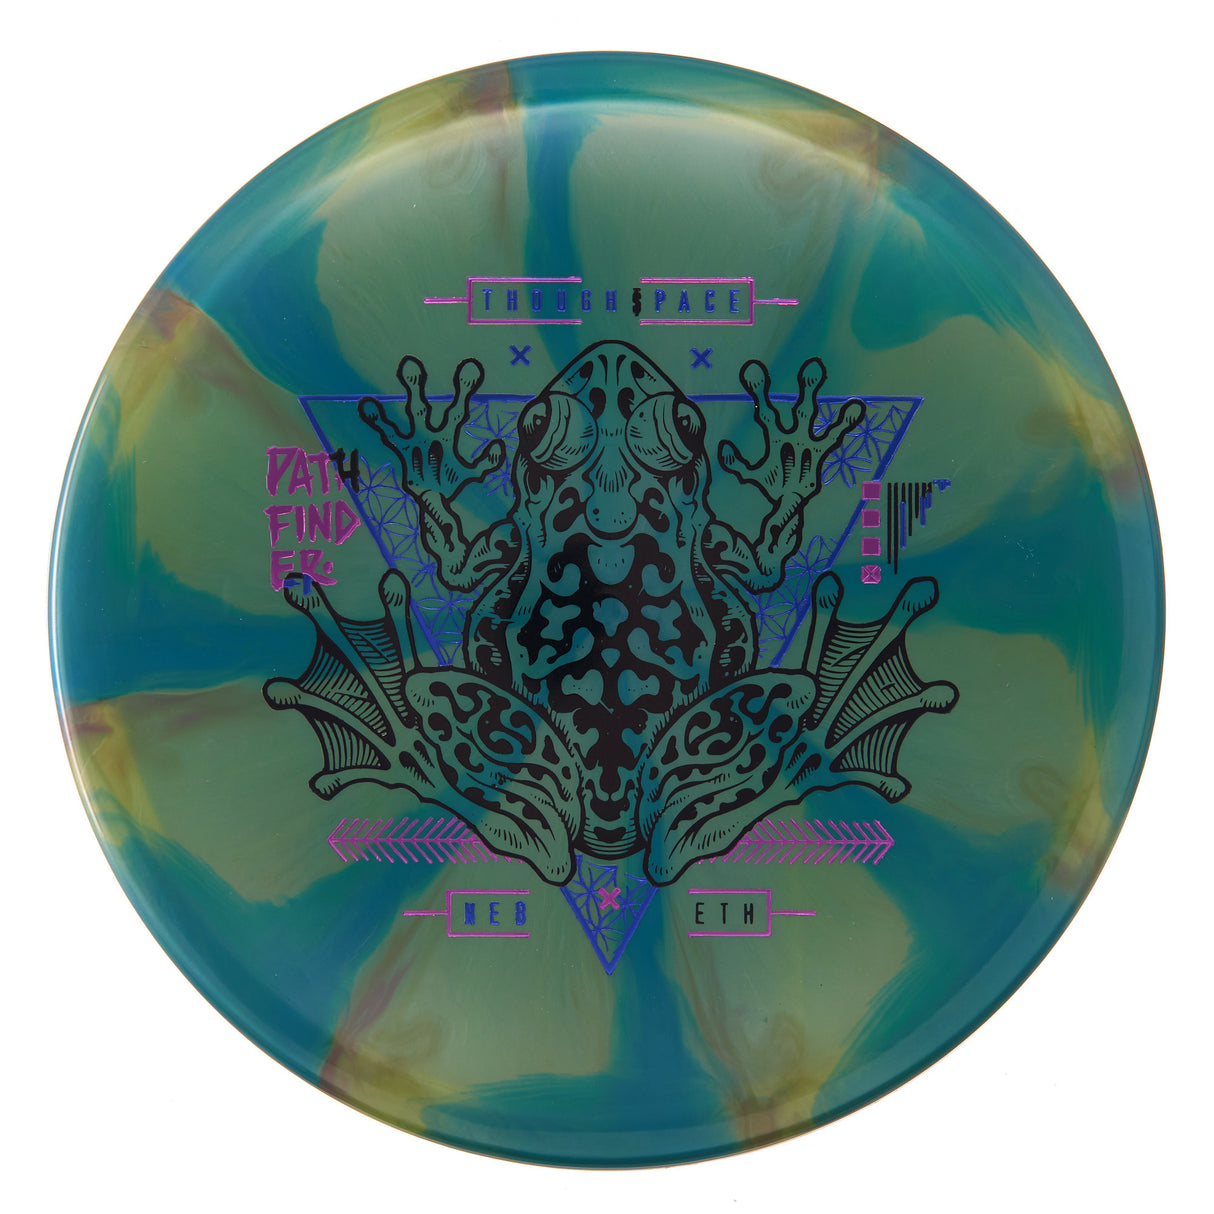 Thought Space Athletics Pathfinder - Nebula Ethereal 178g | Style 0002